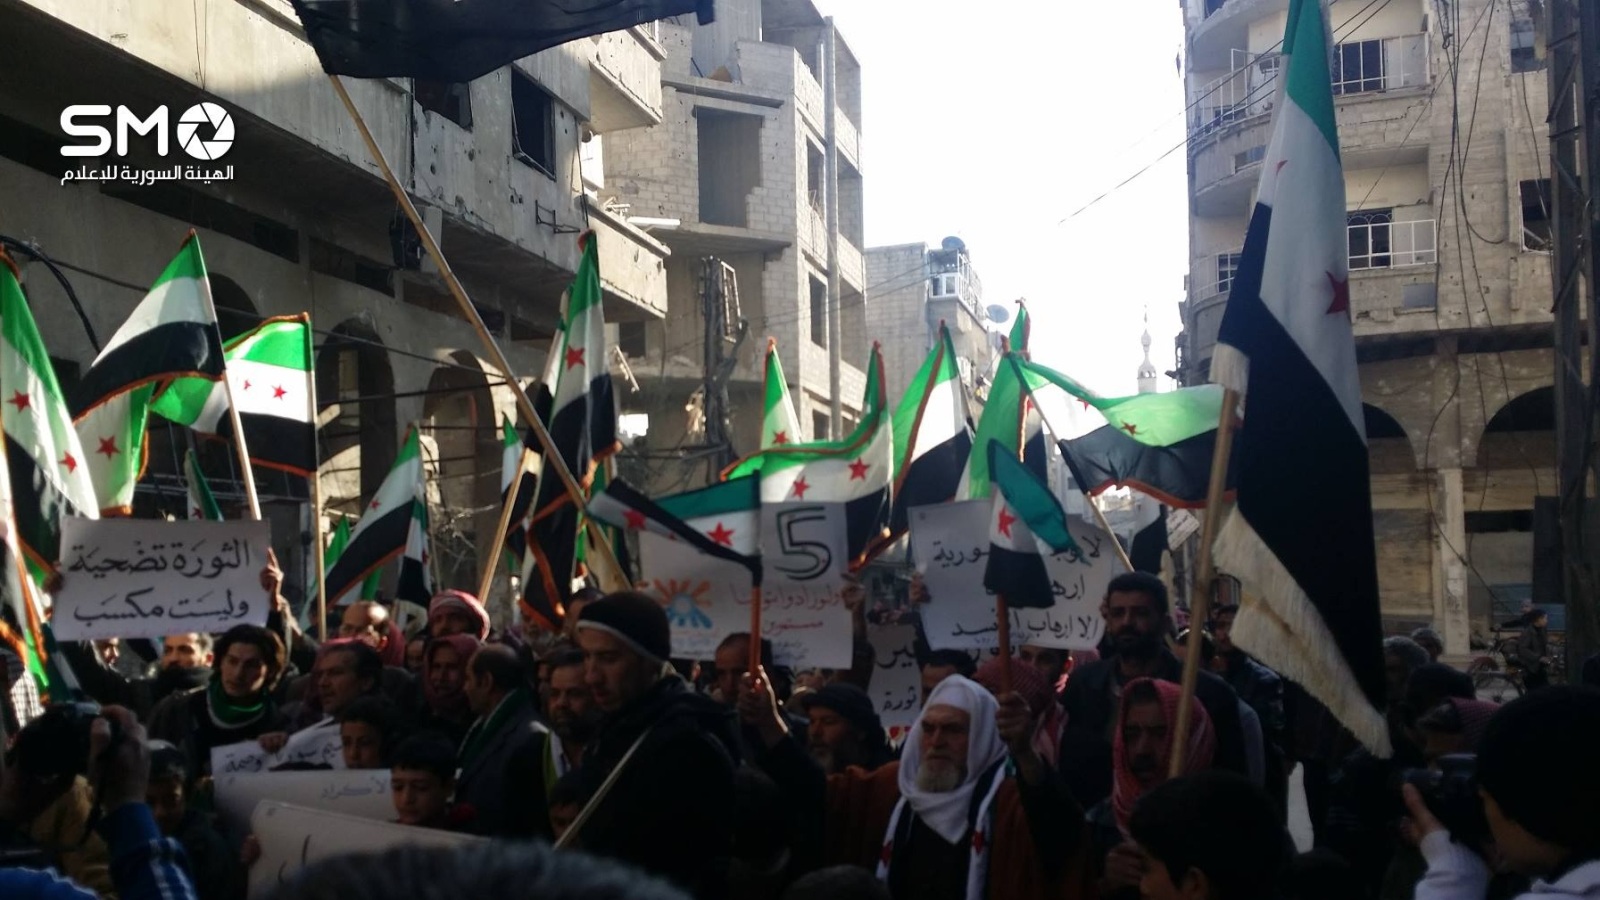 جانب من المظاهرة التي شهدتها مدينة دوما اليوم للمطالبة بإسقاط النظام وتحرير المعتقلين (ناشطون)